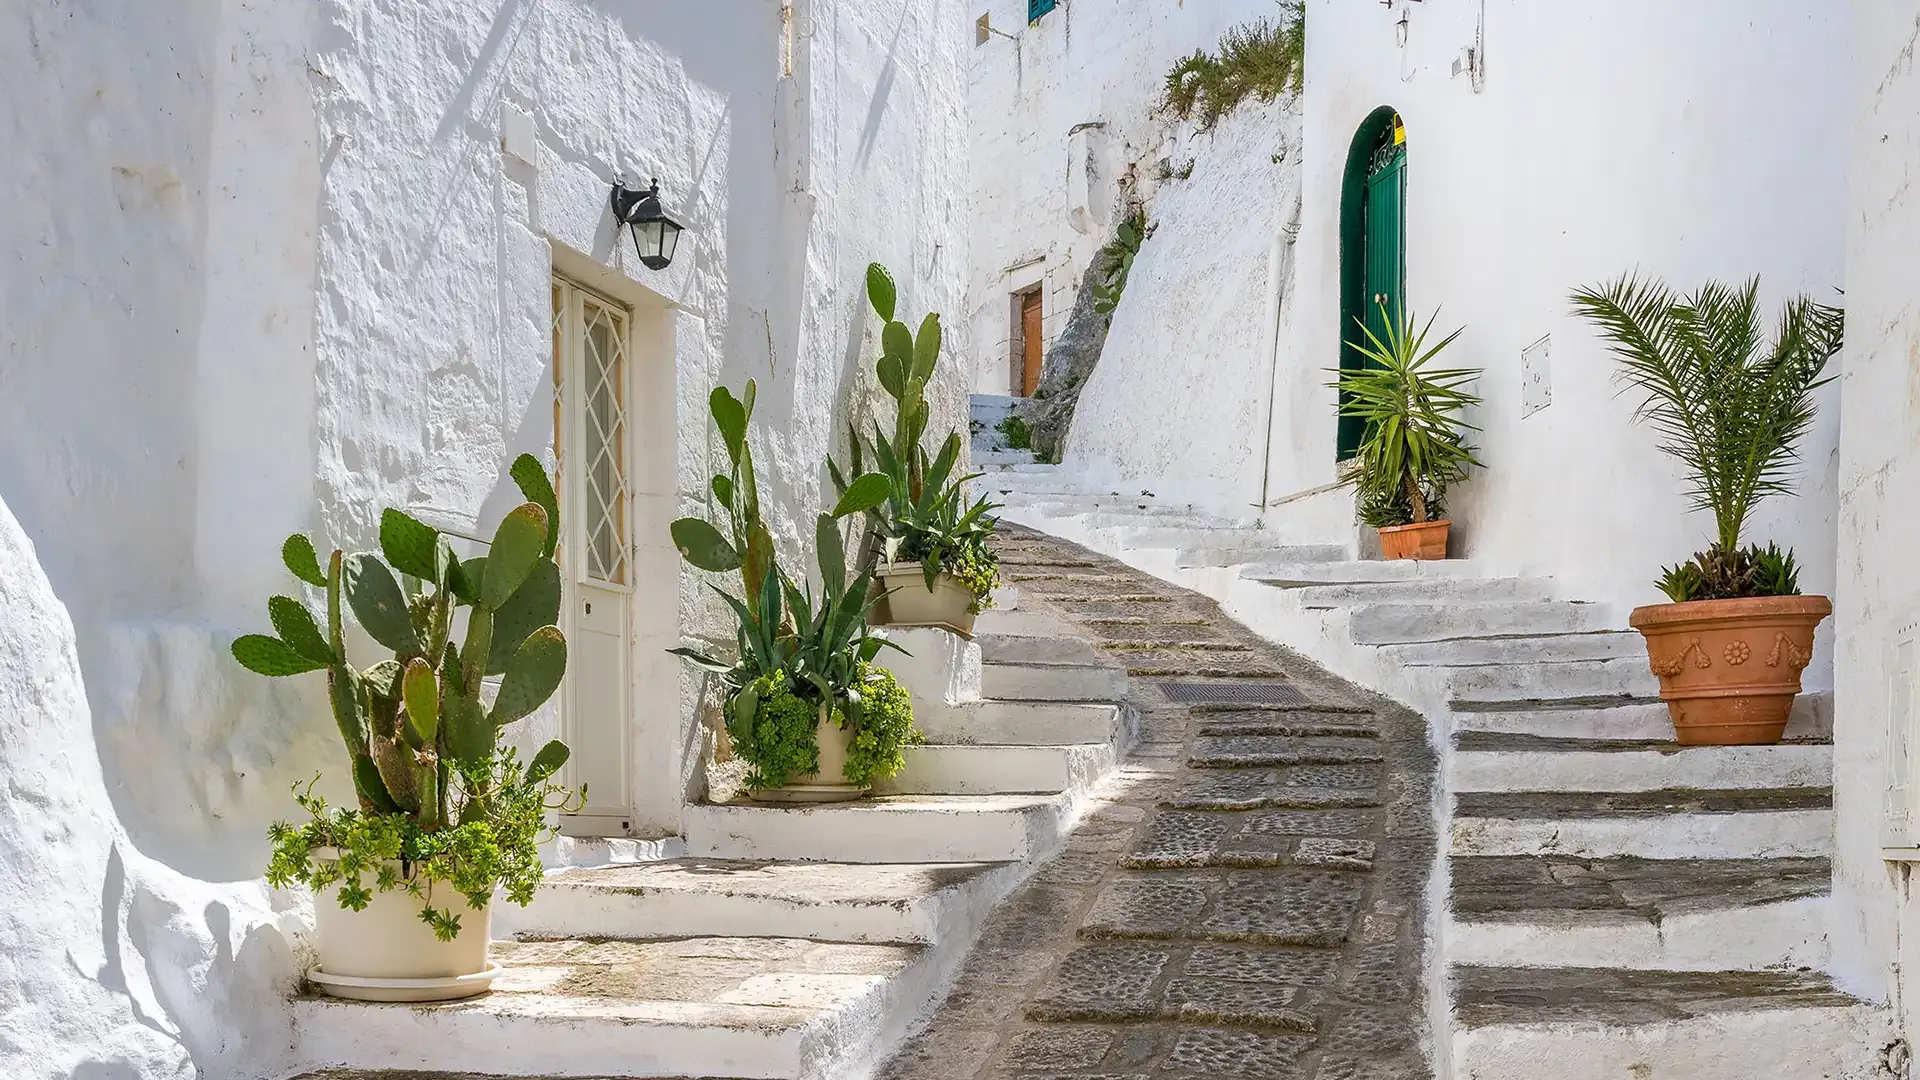 Stradina bianca con scalinate e piante in vaso in un villaggio mediterraneo.